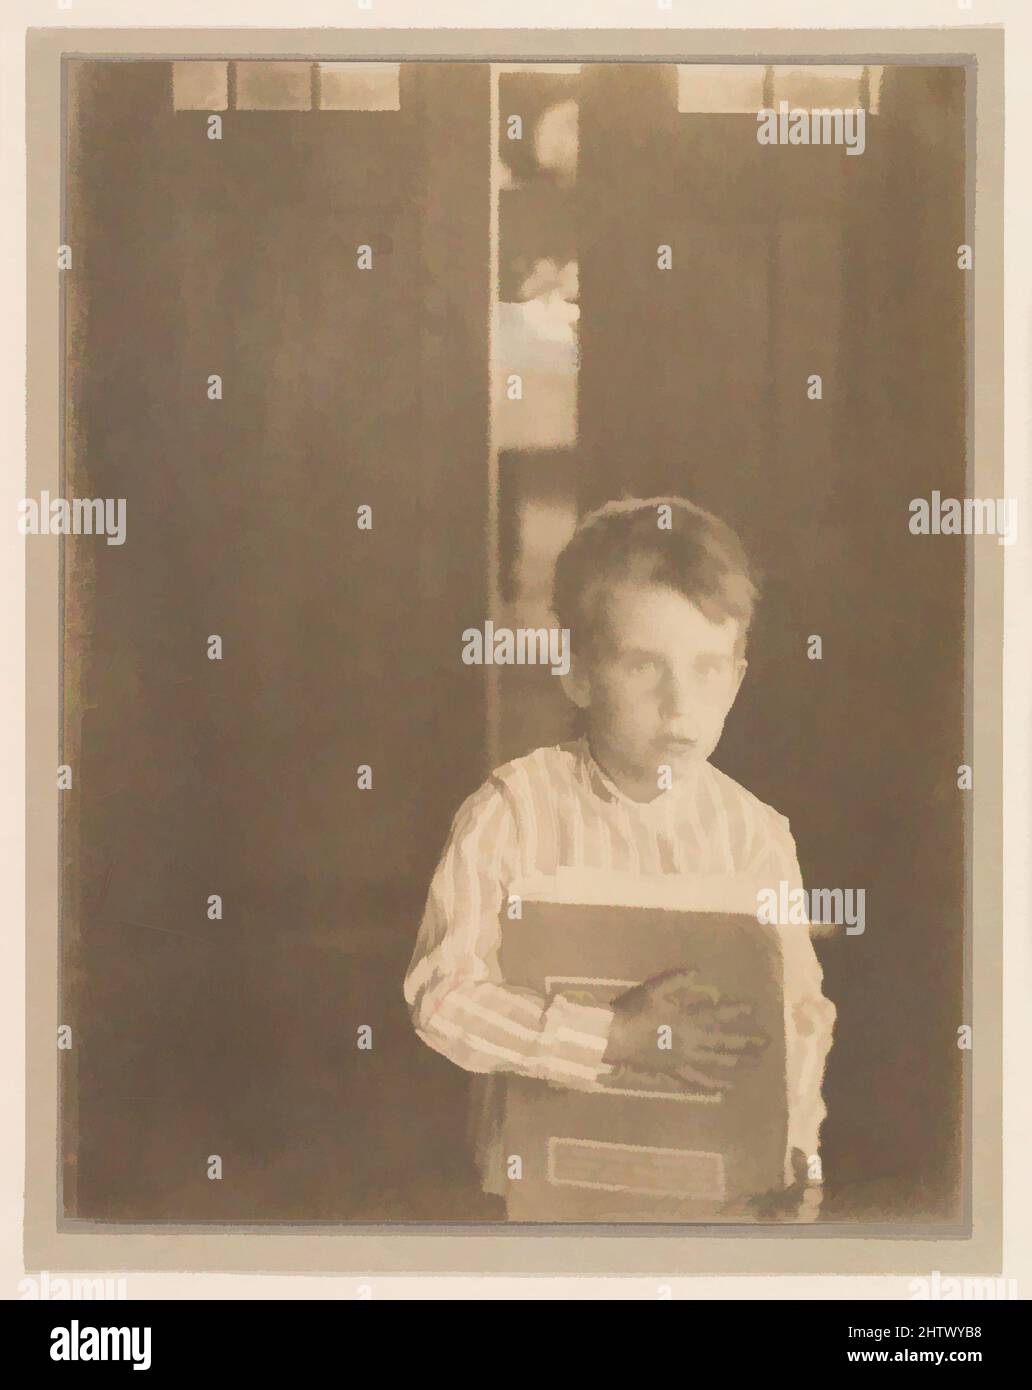 Art inspiré par un garçon avec « Camera Work », 1903, imprimé platine, 20,0 x 15,3 cm (7 7/8 x 6 po.), photographies, Clarence H. White (américain, 1871–1925), Bien qu'il travaillait toujours comme comptable pour une épicerie en gros dans son pays de Newark, Ohio, quand il a fait cette photo, White Has, Classic œuvres modernisées par Artotop avec un peu de modernité. Formes, couleur et valeur, impact visuel accrocheur sur l'art émotions par la liberté d'œuvres d'art d'une manière contemporaine. Un message intemporel qui cherche une nouvelle direction créative. Artistes qui se tournent vers le support numérique et créent le NFT Artotop Banque D'Images